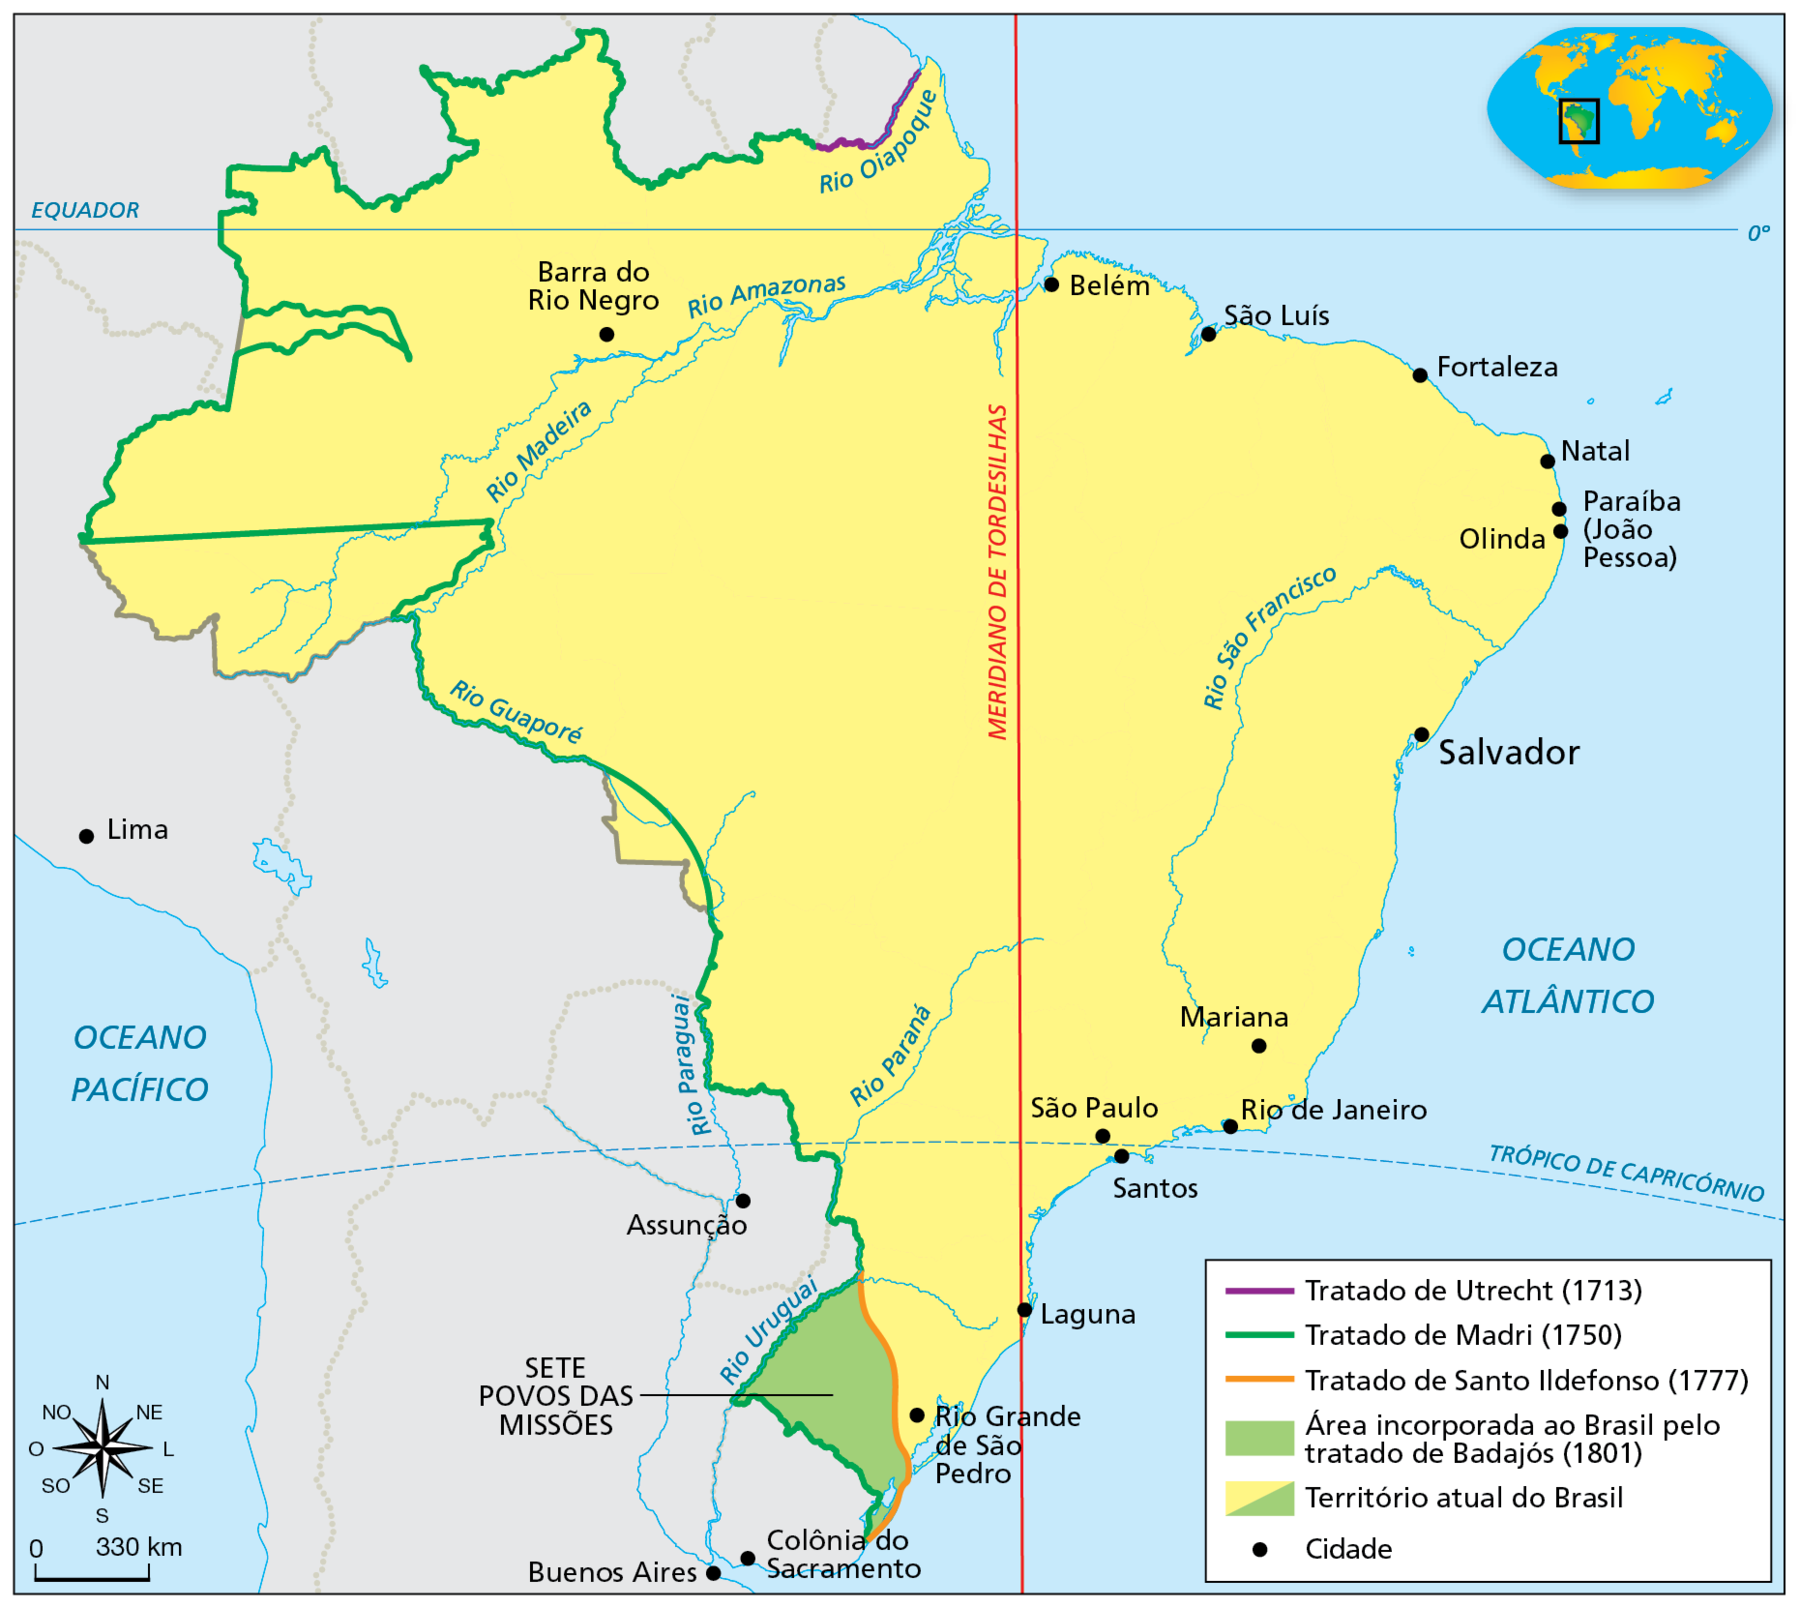 Mapa. Tratados de limites (séculos dezoito a dezenove). Destaque para o território do Brasil. Uma linha vertical vermelha divide o território em duas partes, leste e oeste, indicando em vermelho “Meridiano de Tordesilhas'”. Uma linha roxa, no extremo norte do território, indica “Tratado de Utrecht (1713)”. Uma linha verde, contornando os limites no oeste do território, indica “Tratado de Madri (1750)”. Uma linha laranja, no sul do território, indica “Tratado de Santo Ildefonso (1777)”. Em verde, “Área incorporada ao Brasil pelo Tratado de Badajós (1801)”, envolvendo “Sete povos das Missões”, no oeste do atual estado do Rio Grande do Sul. Em amarelo e verde, “Território atual do Brasil”. No canto inferior esquerdo, rosa dos ventos e escala de 330 quilômetros.